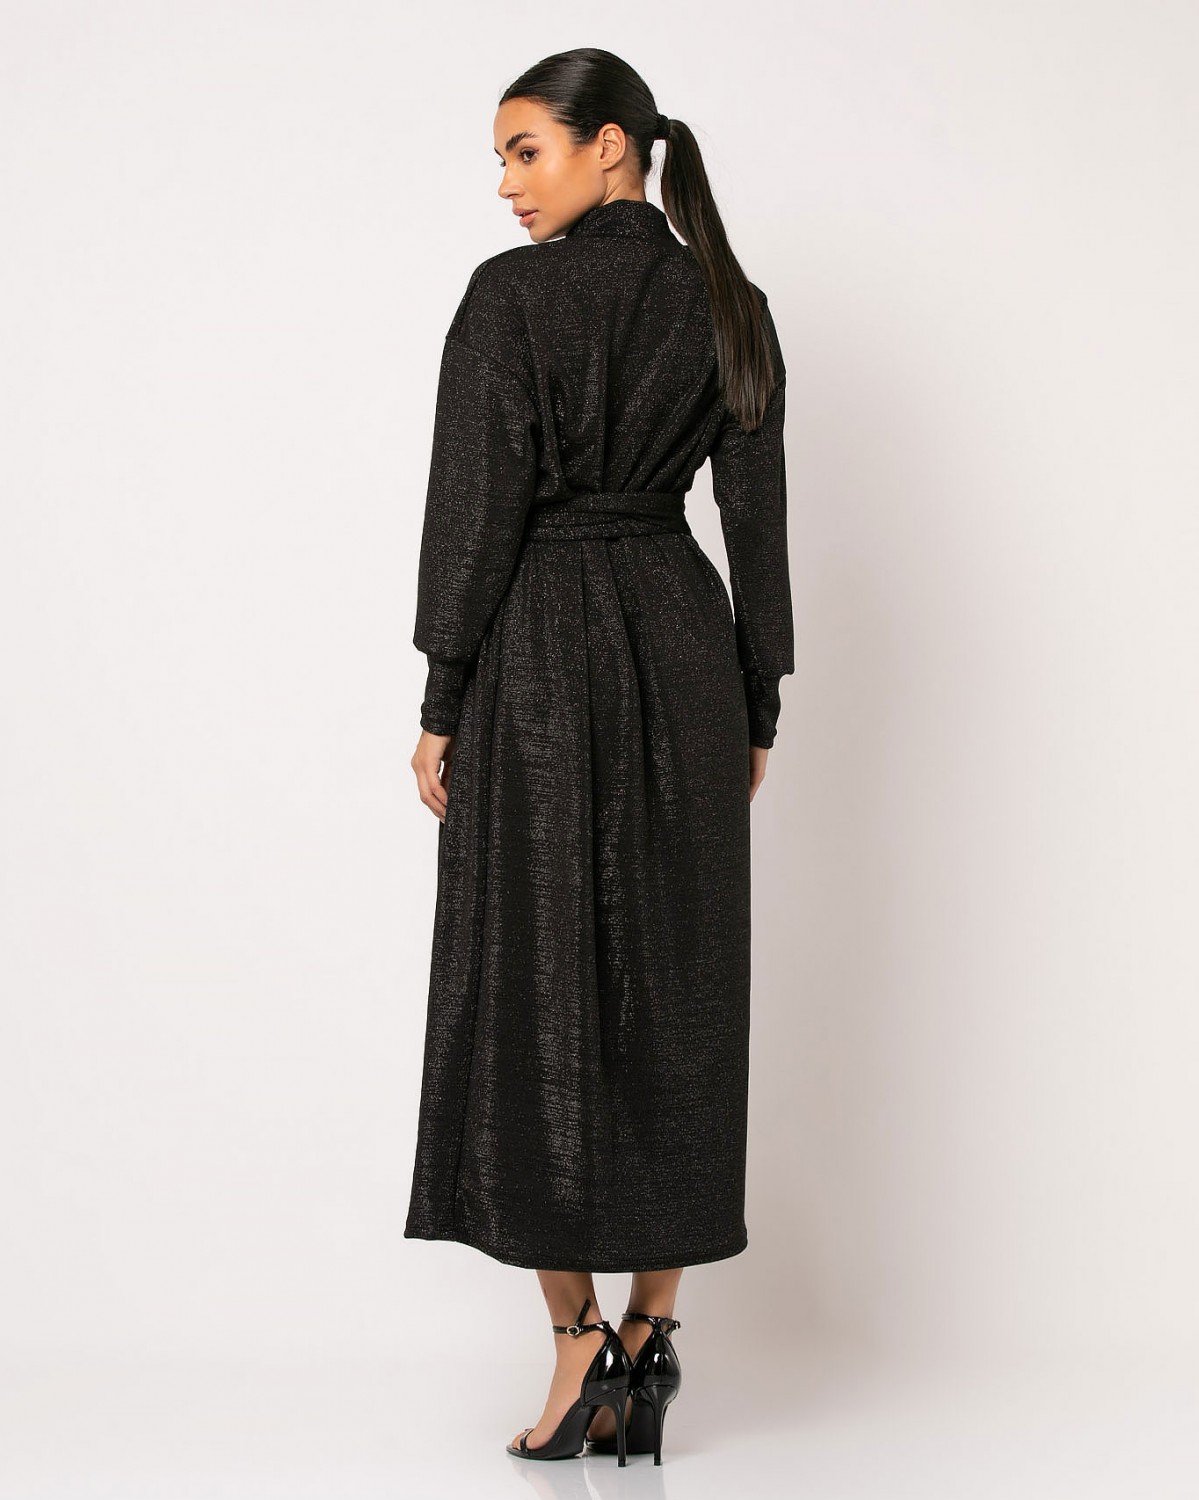 Φόρεμα maxi μακρυμάνικο με κλειστό λαιμό λούρεξ Μαύρο 